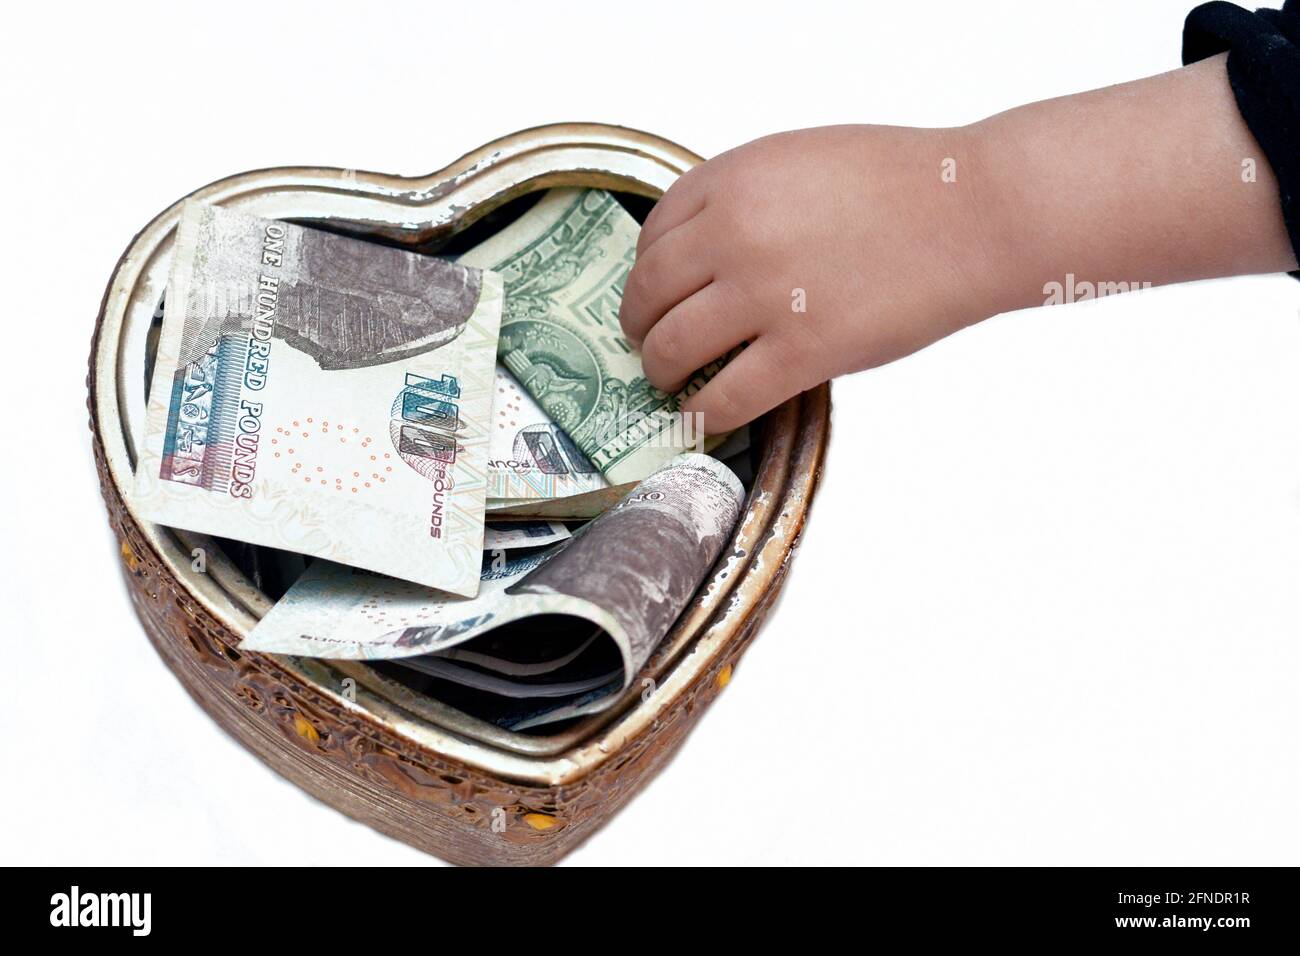 Ein Kind, das 1 Dollar in eine herzförmige Spendenbox steckt, Geld für wohltätige Zwecke sammelt, armen Menschen hilft, eine Schachtel mit mehreren Währungen, donat Stockfoto